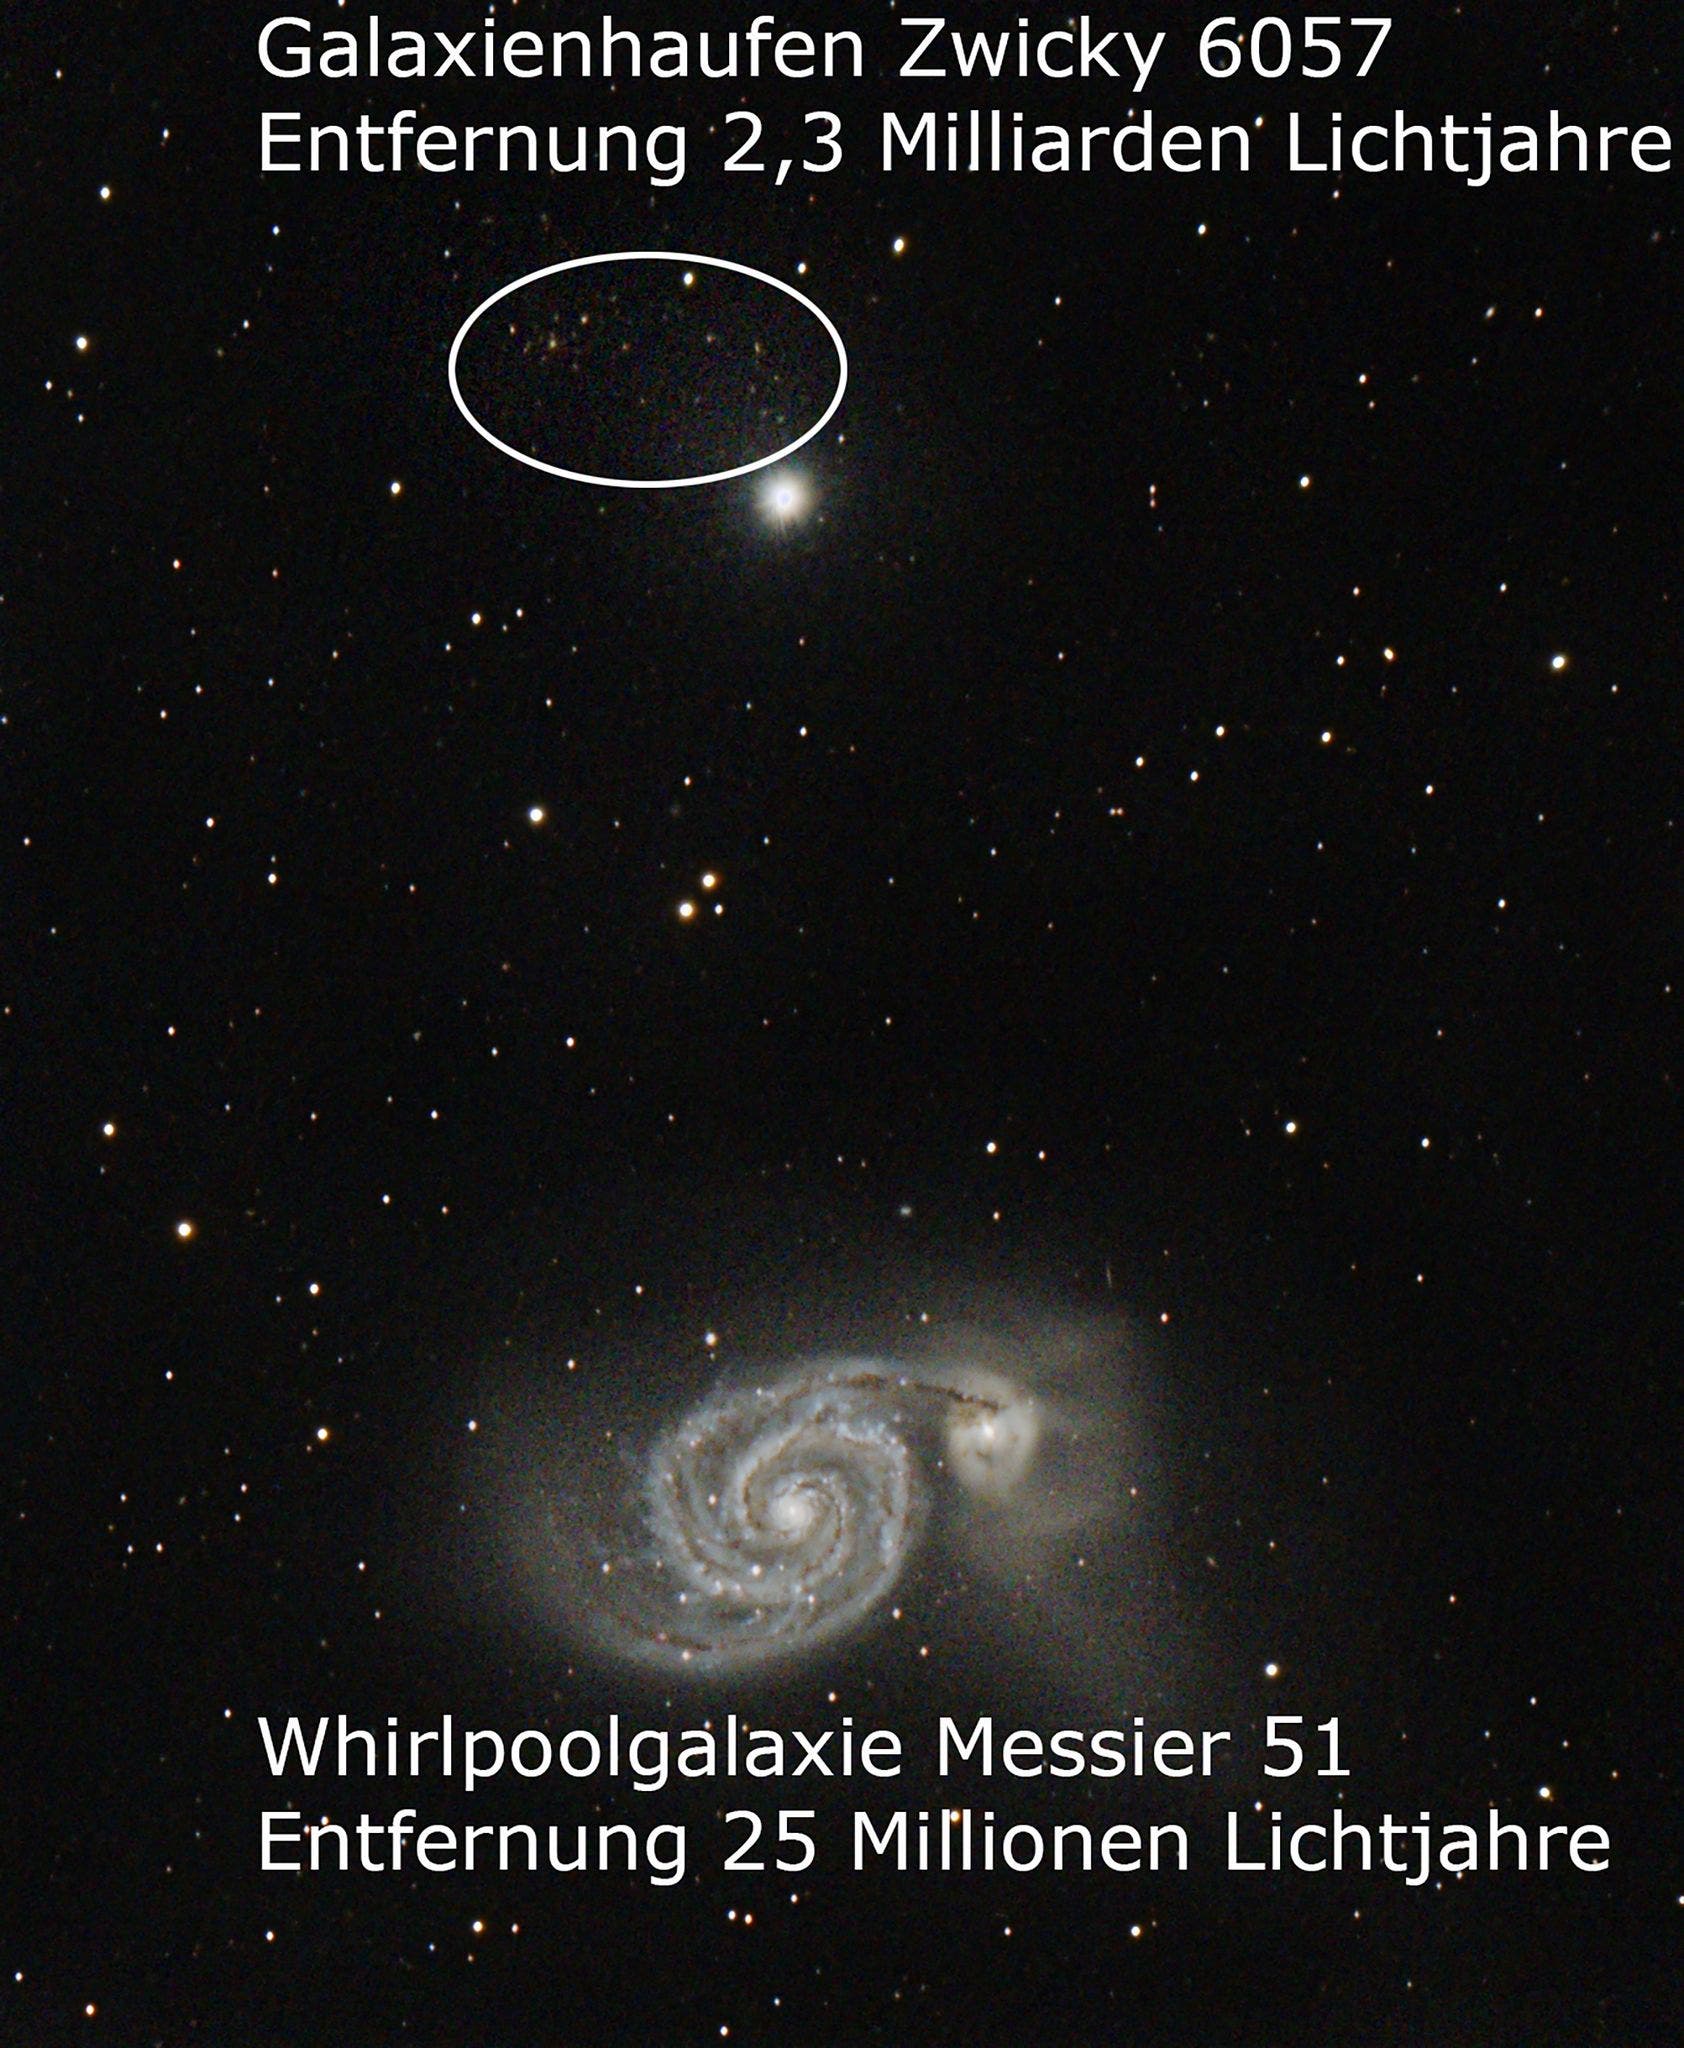 Galaxienhaufen bei der Whirlpoolgalaxie